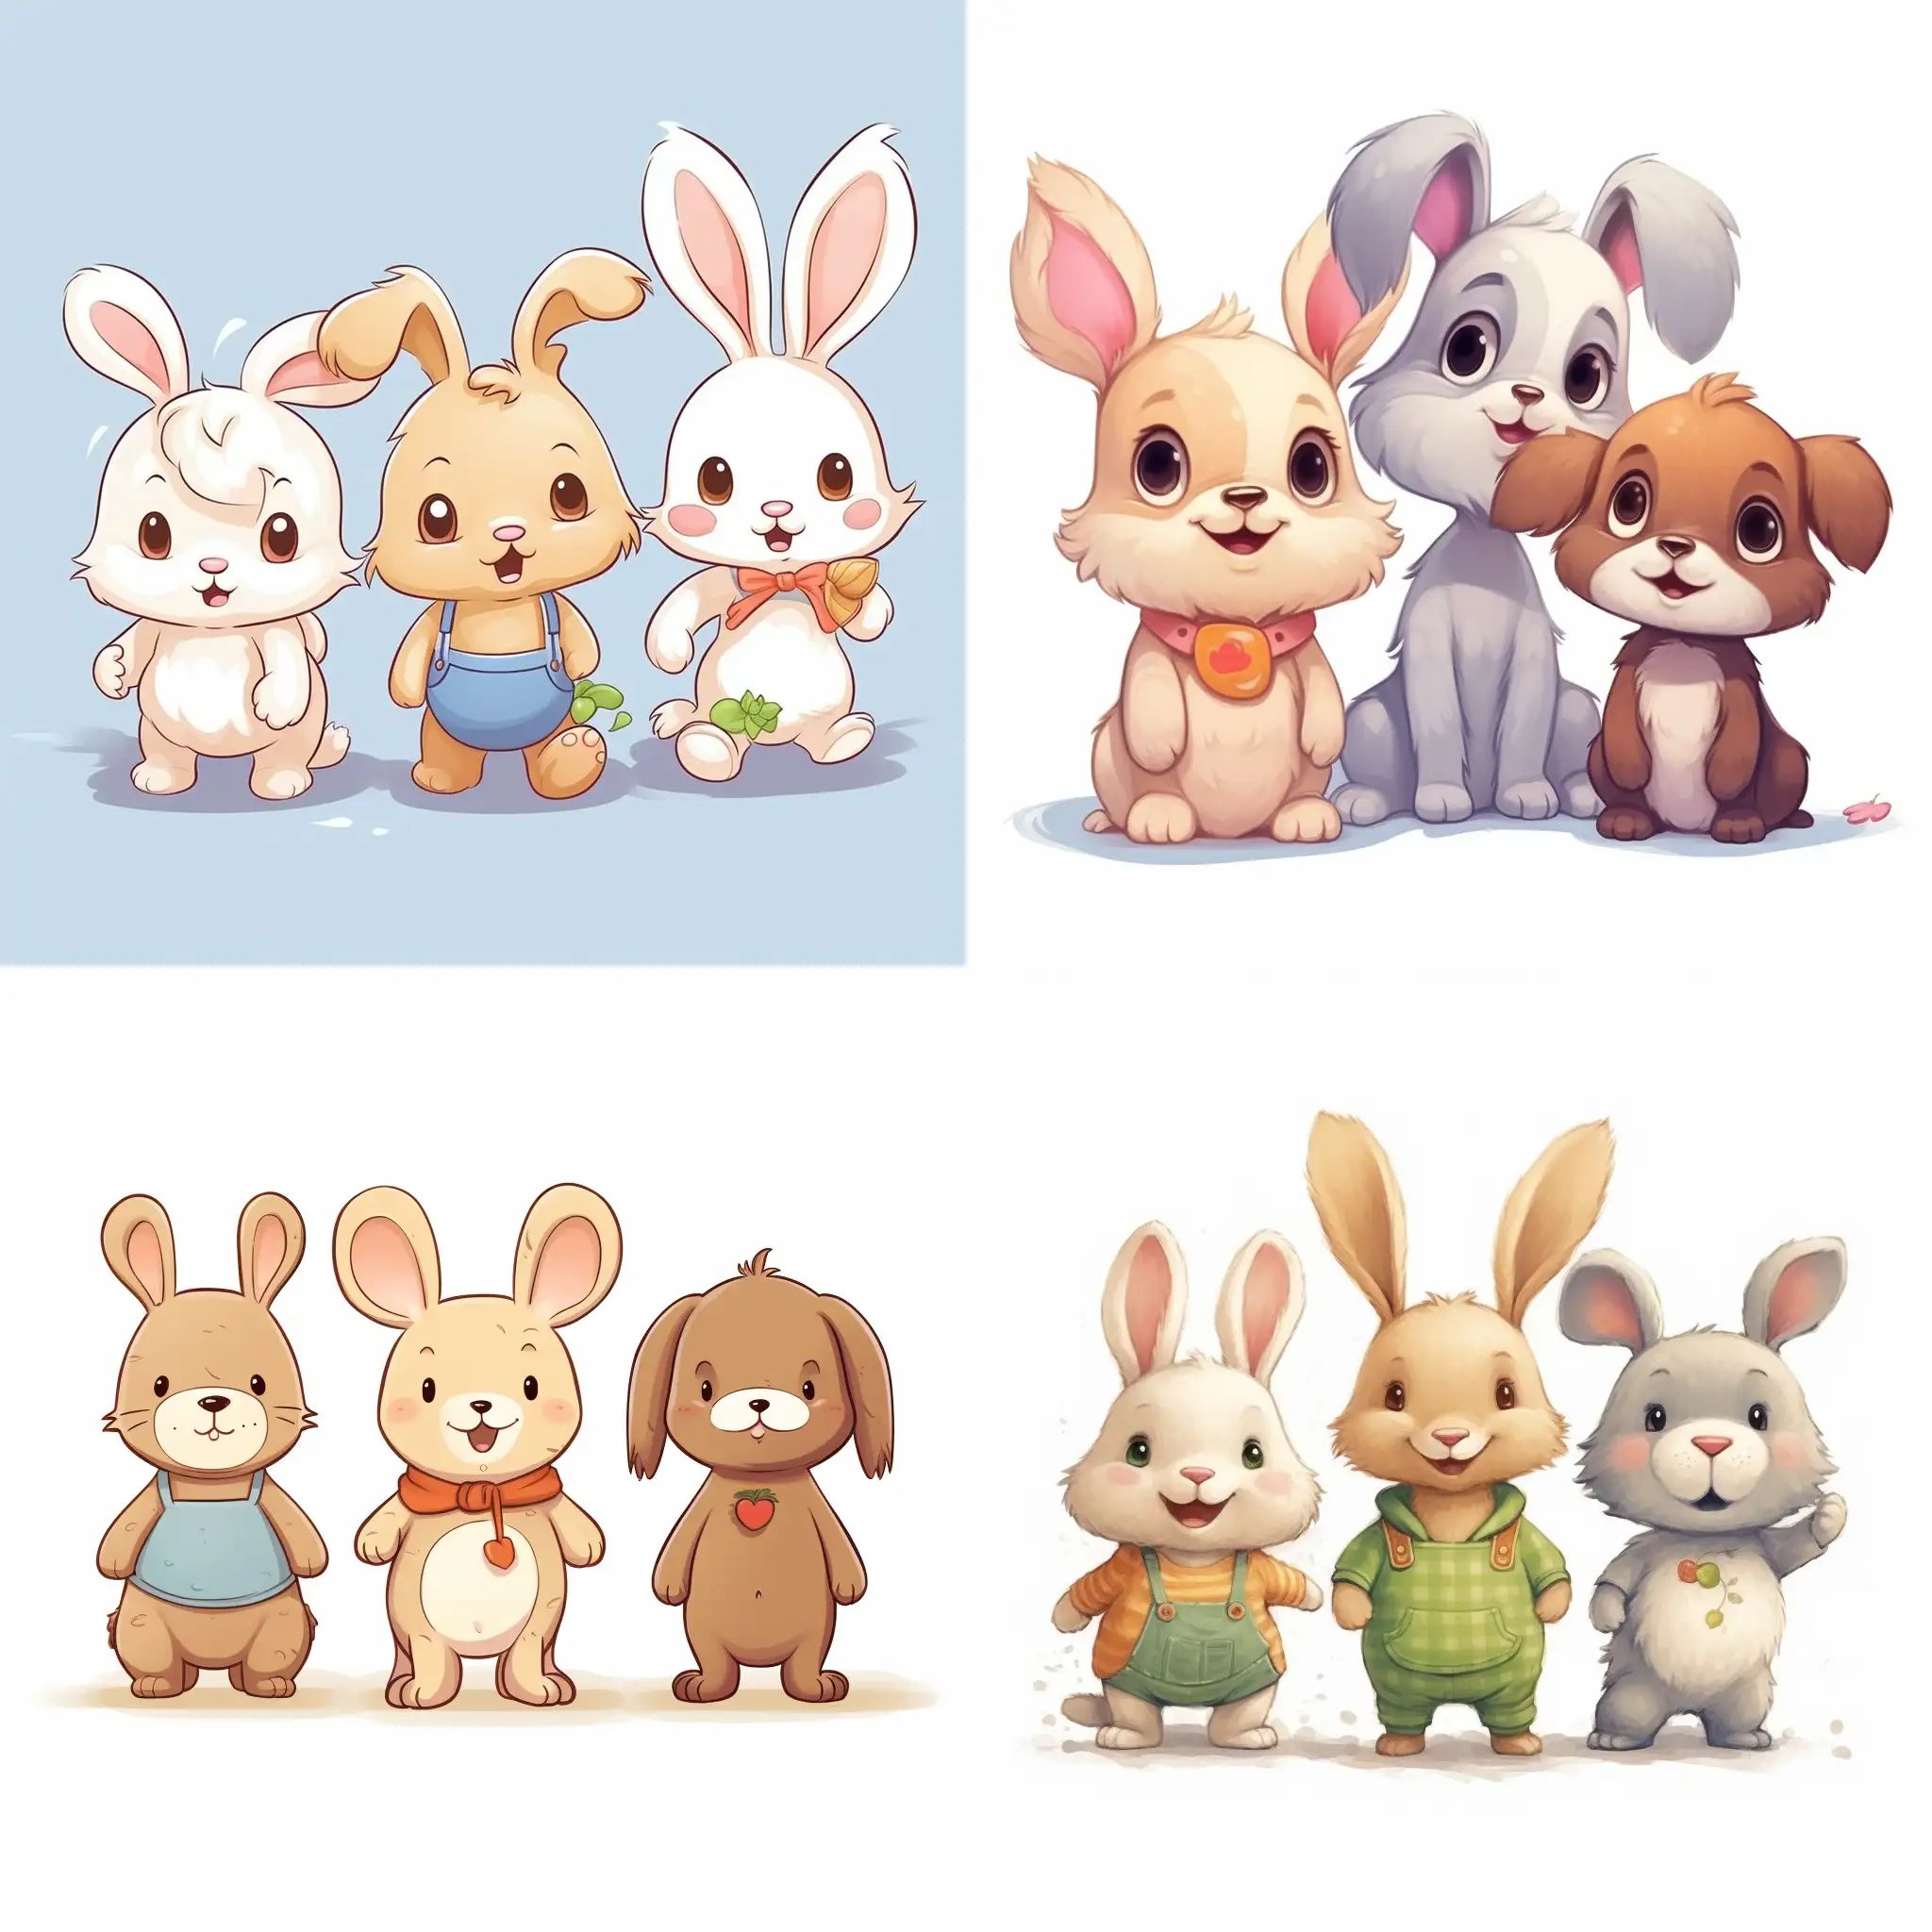 小兔仔在中间，小兔仔还是个小宝贝，左边是小猪，右边是小狗。卡通可爱风格，卡通形象，线条画，不需要太多内容